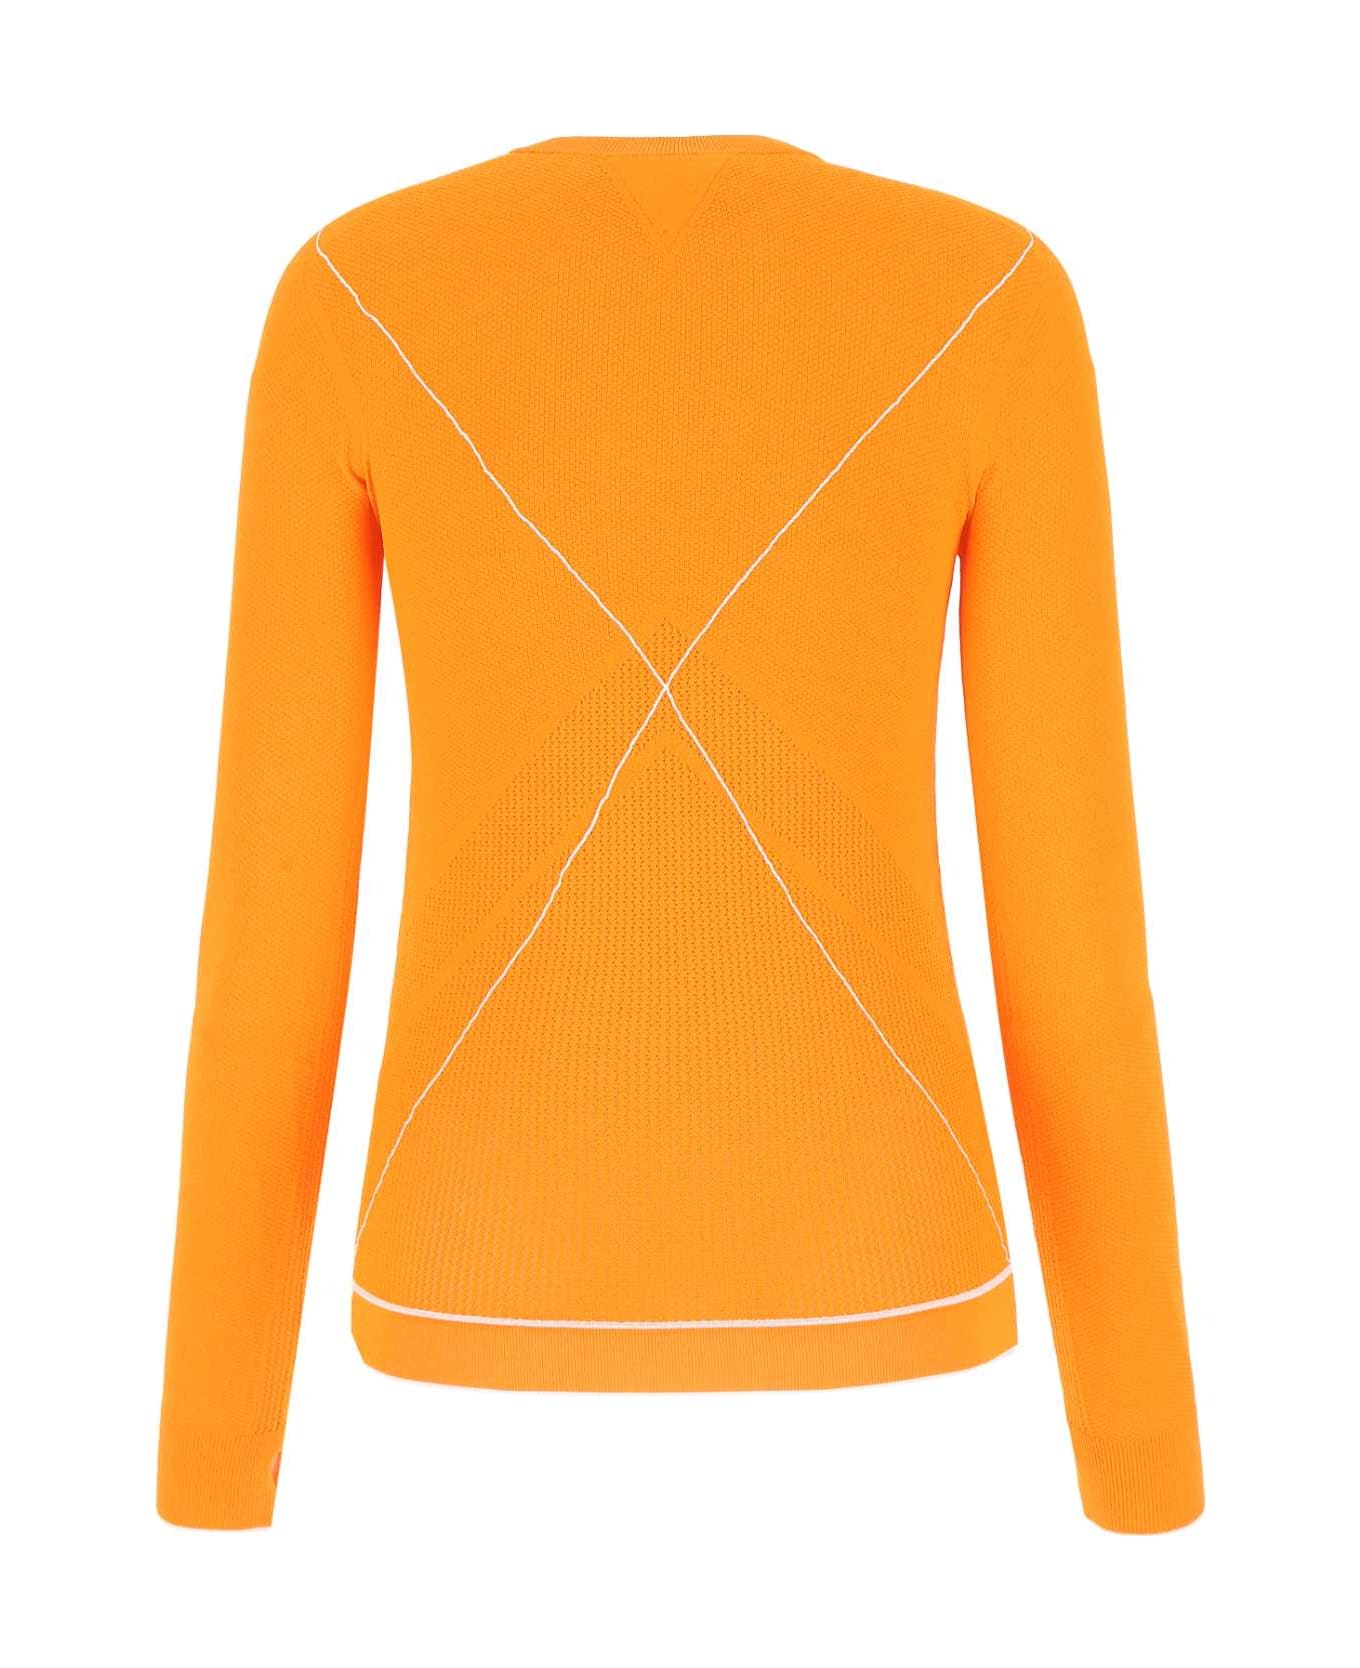 Bottega Veneta Orange Viscose Blend Sweater - 7960